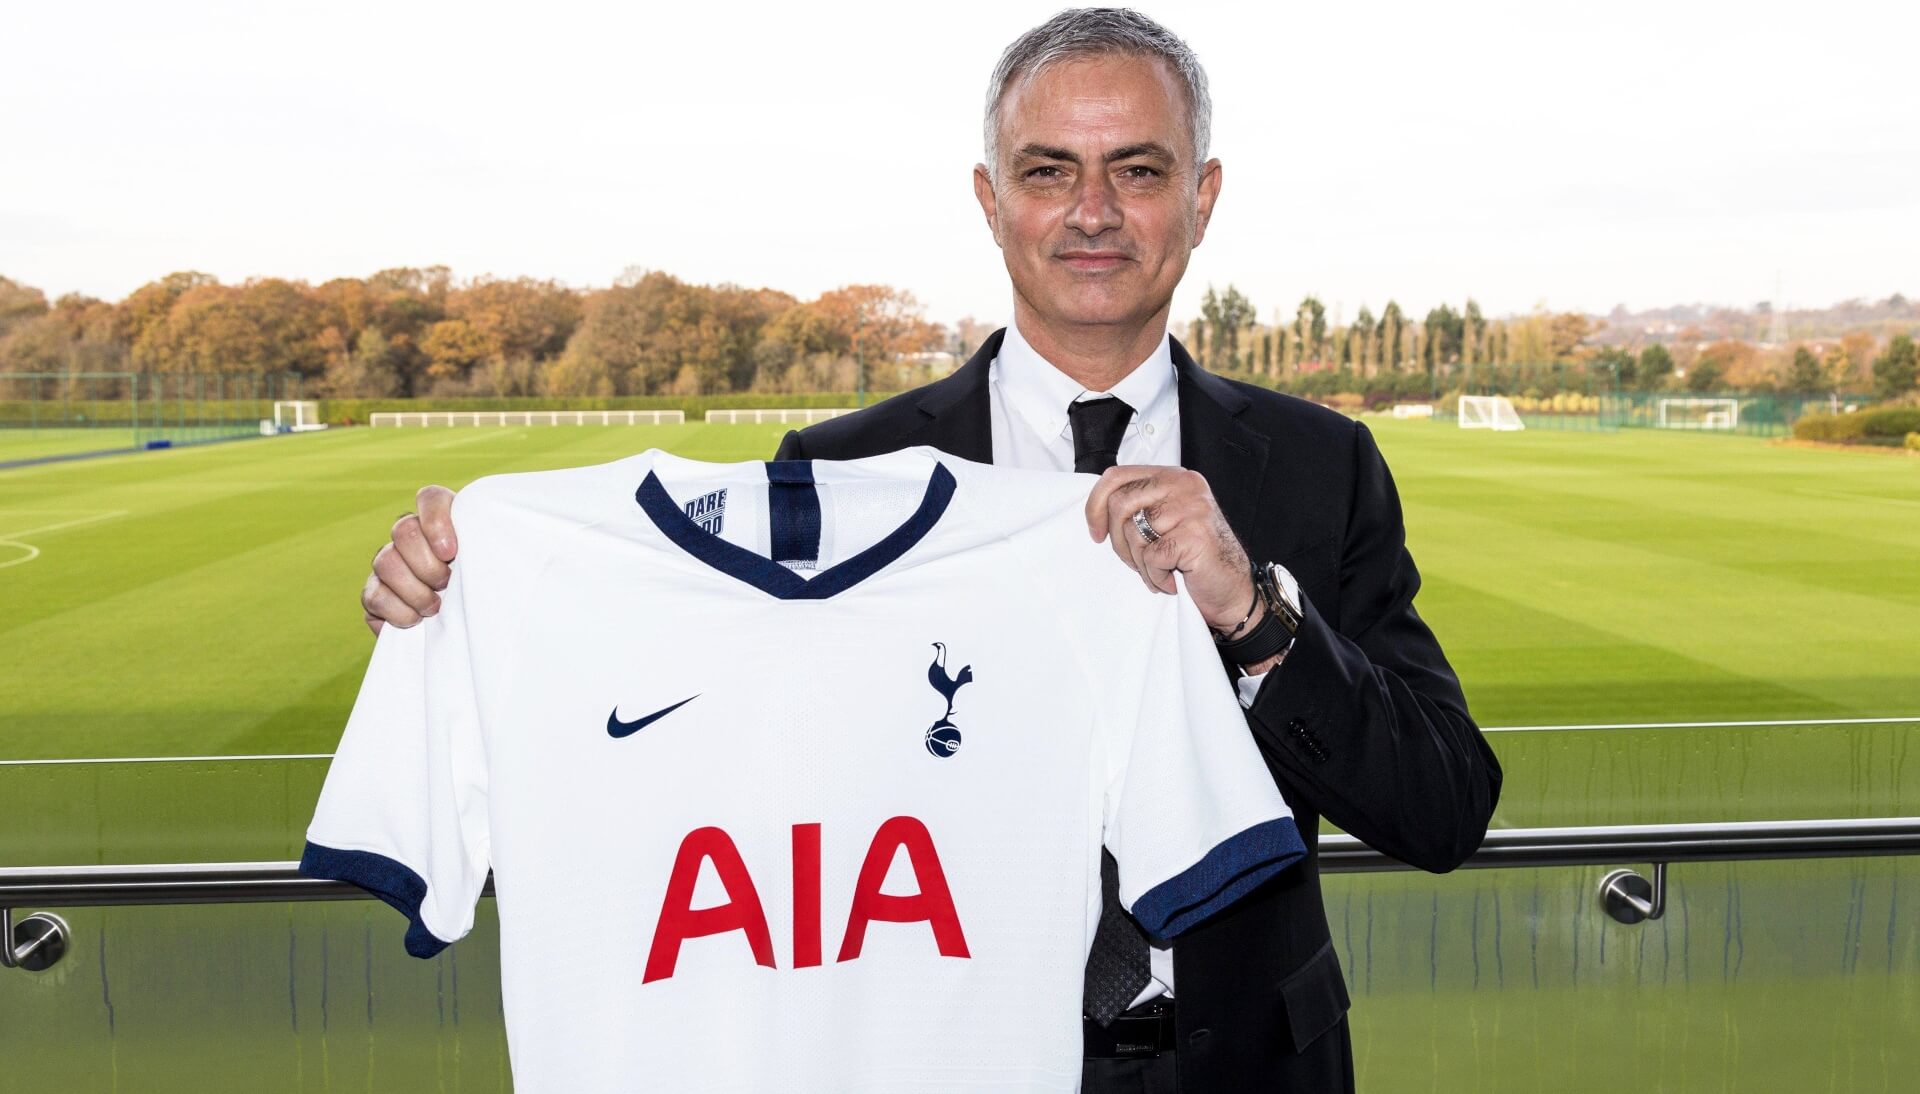 Jose Mourinho - Tottenham Hotspur head coach 2019